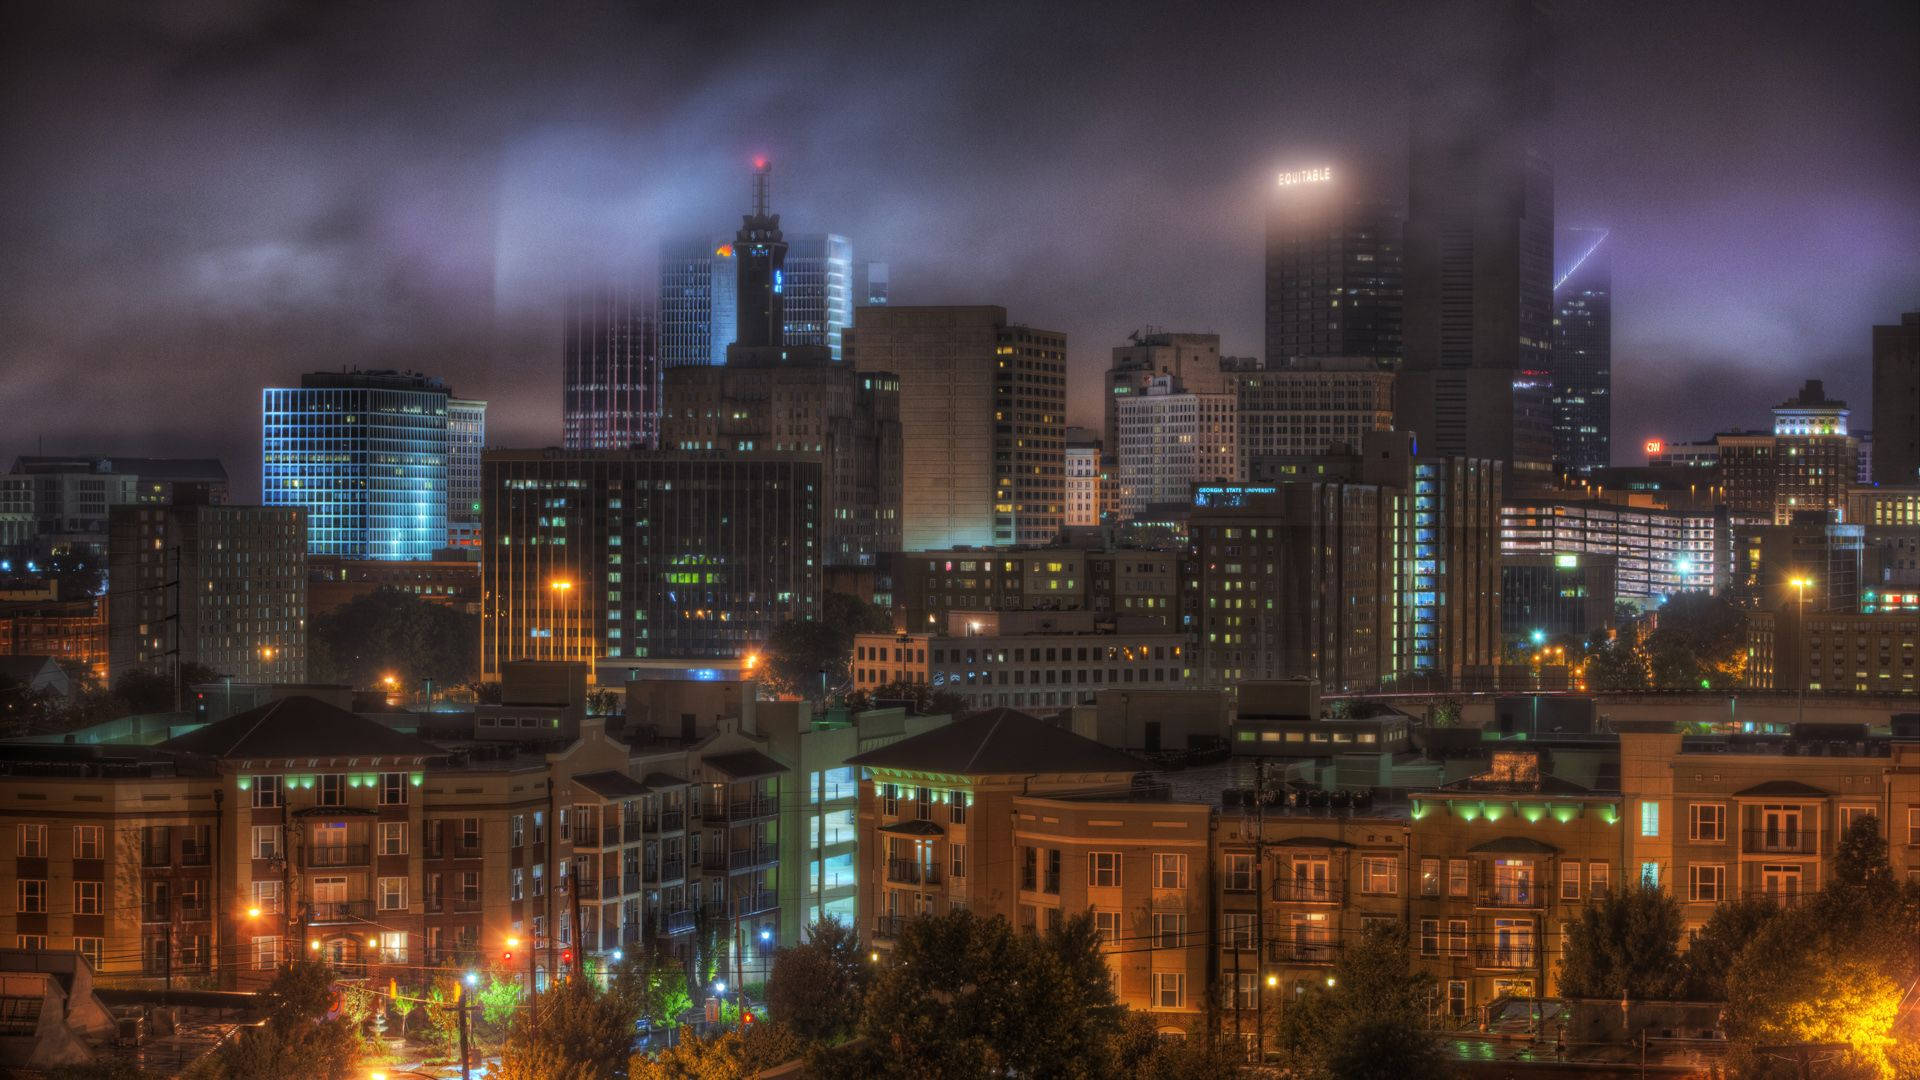 Atlanta With A Smoky Scene